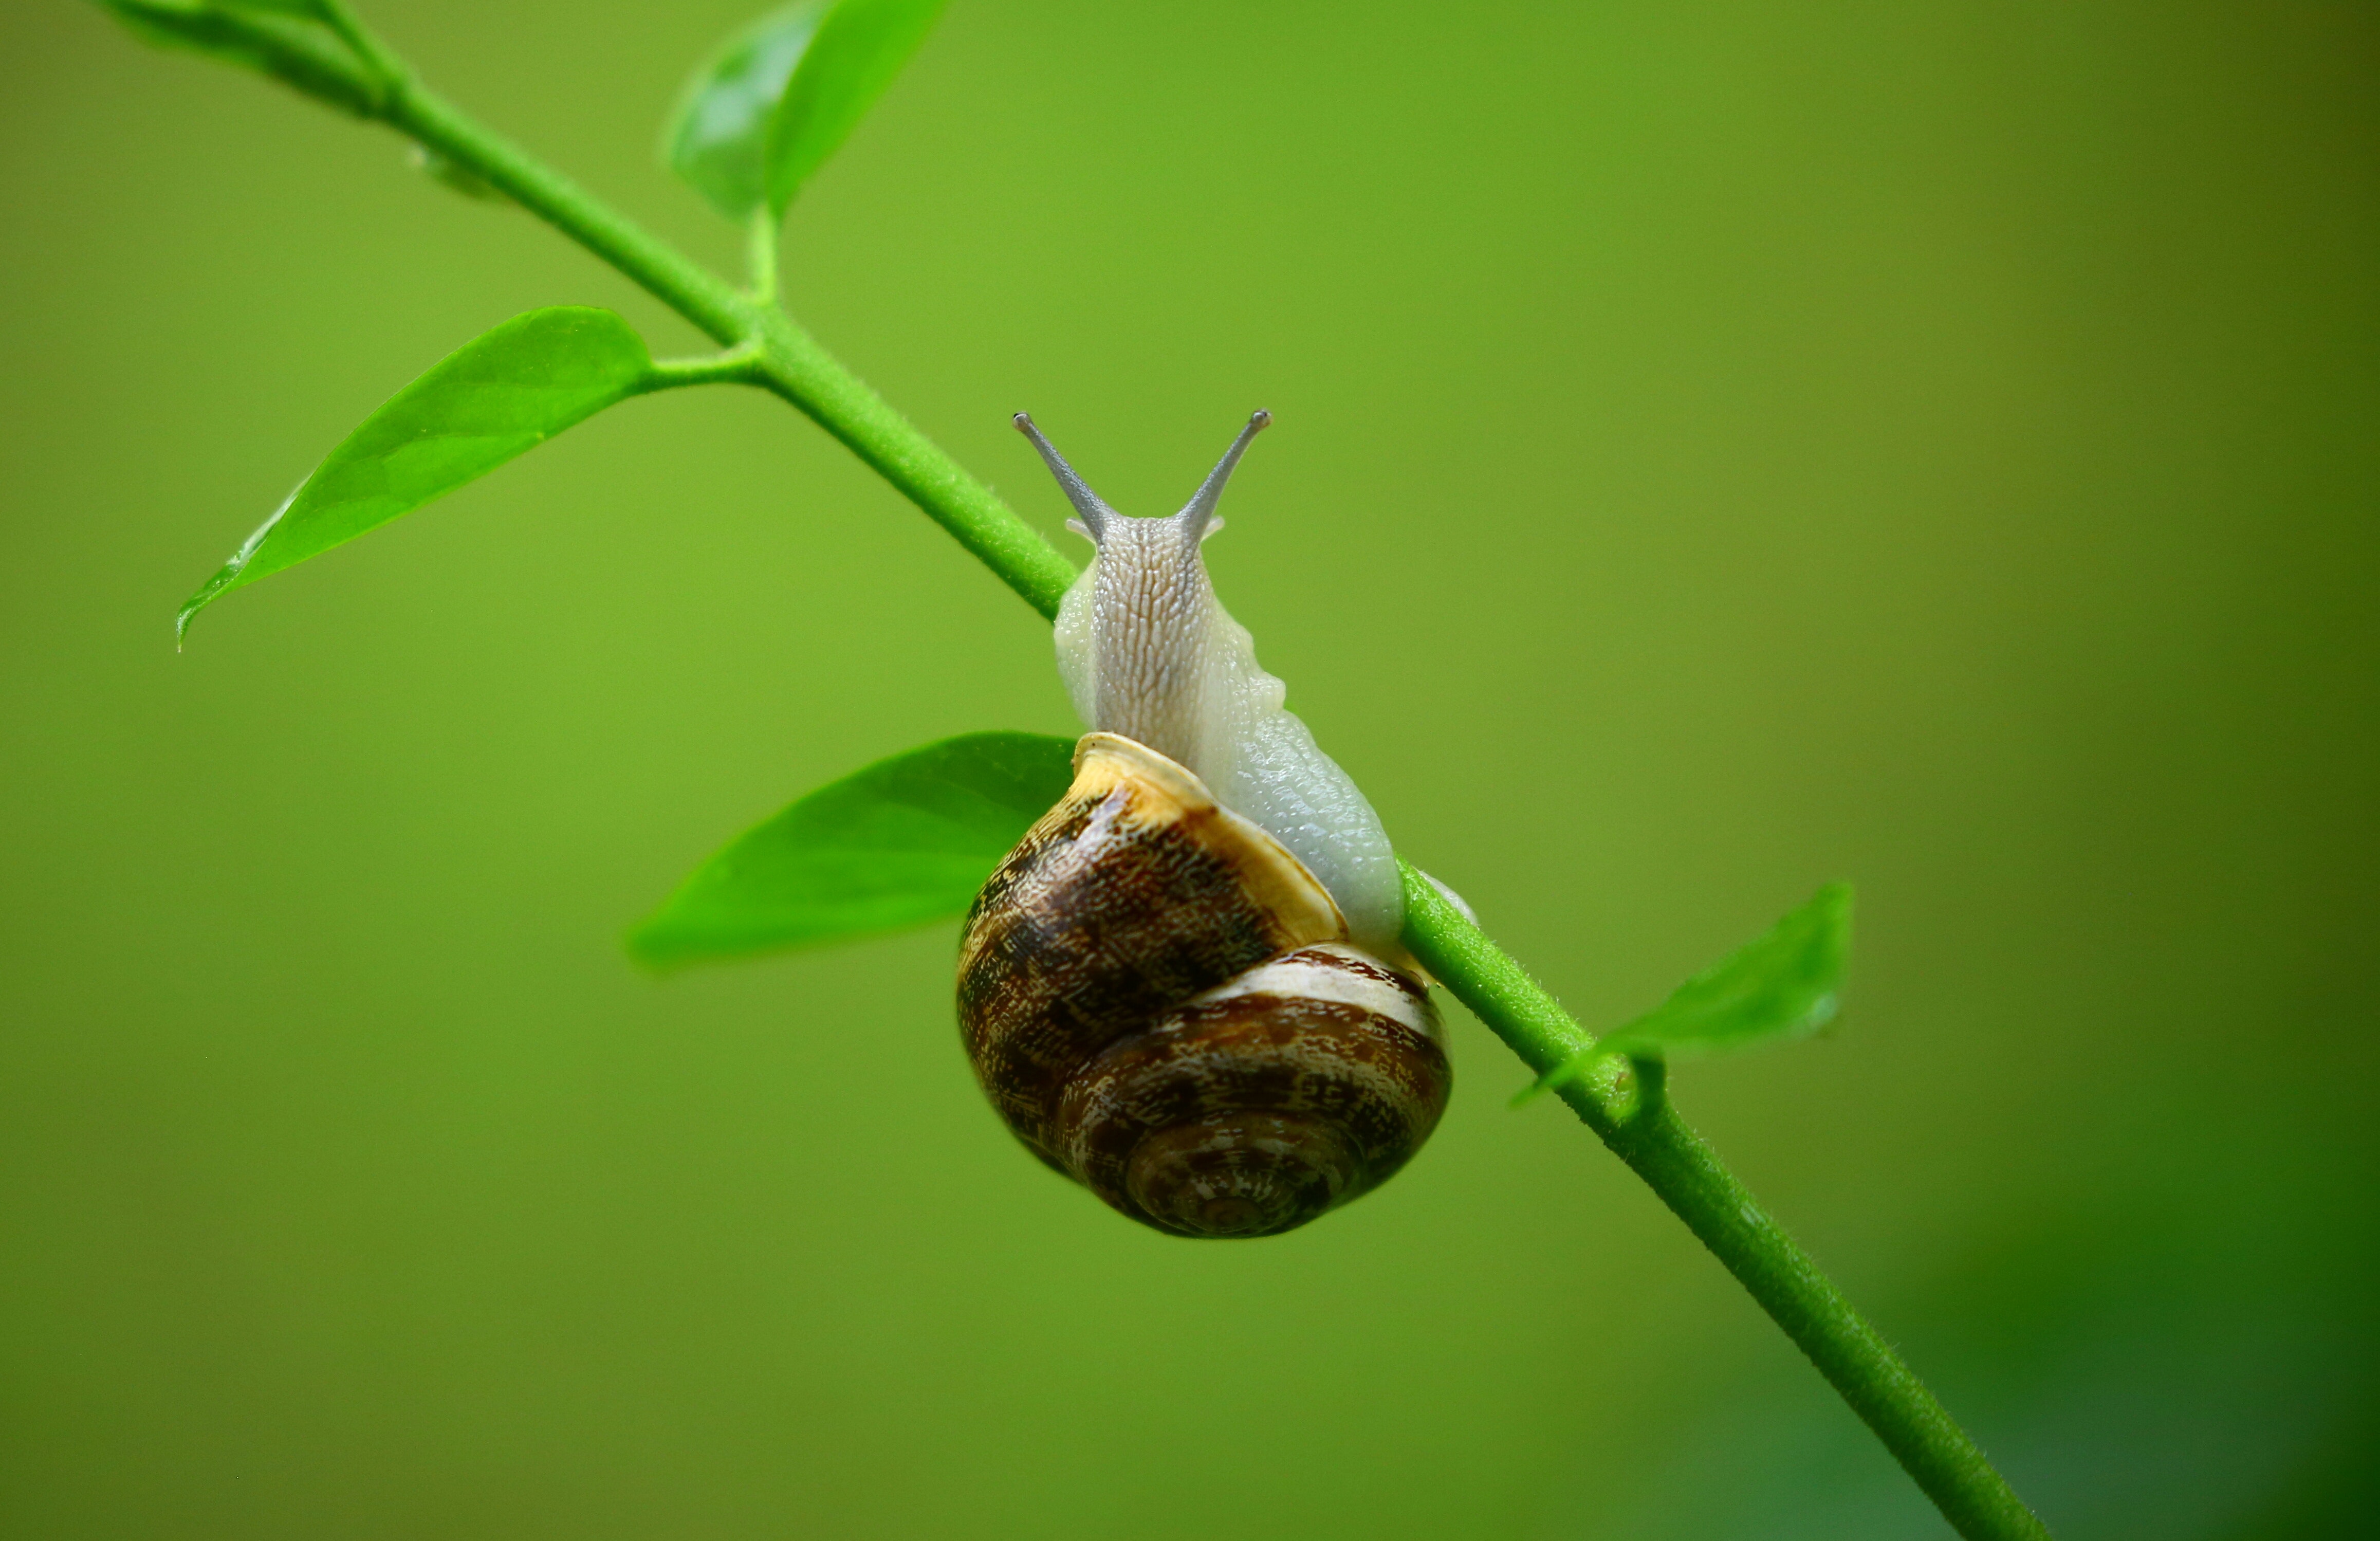 50+ Engaging Snail Photos · Pexels · Free Stock Photos